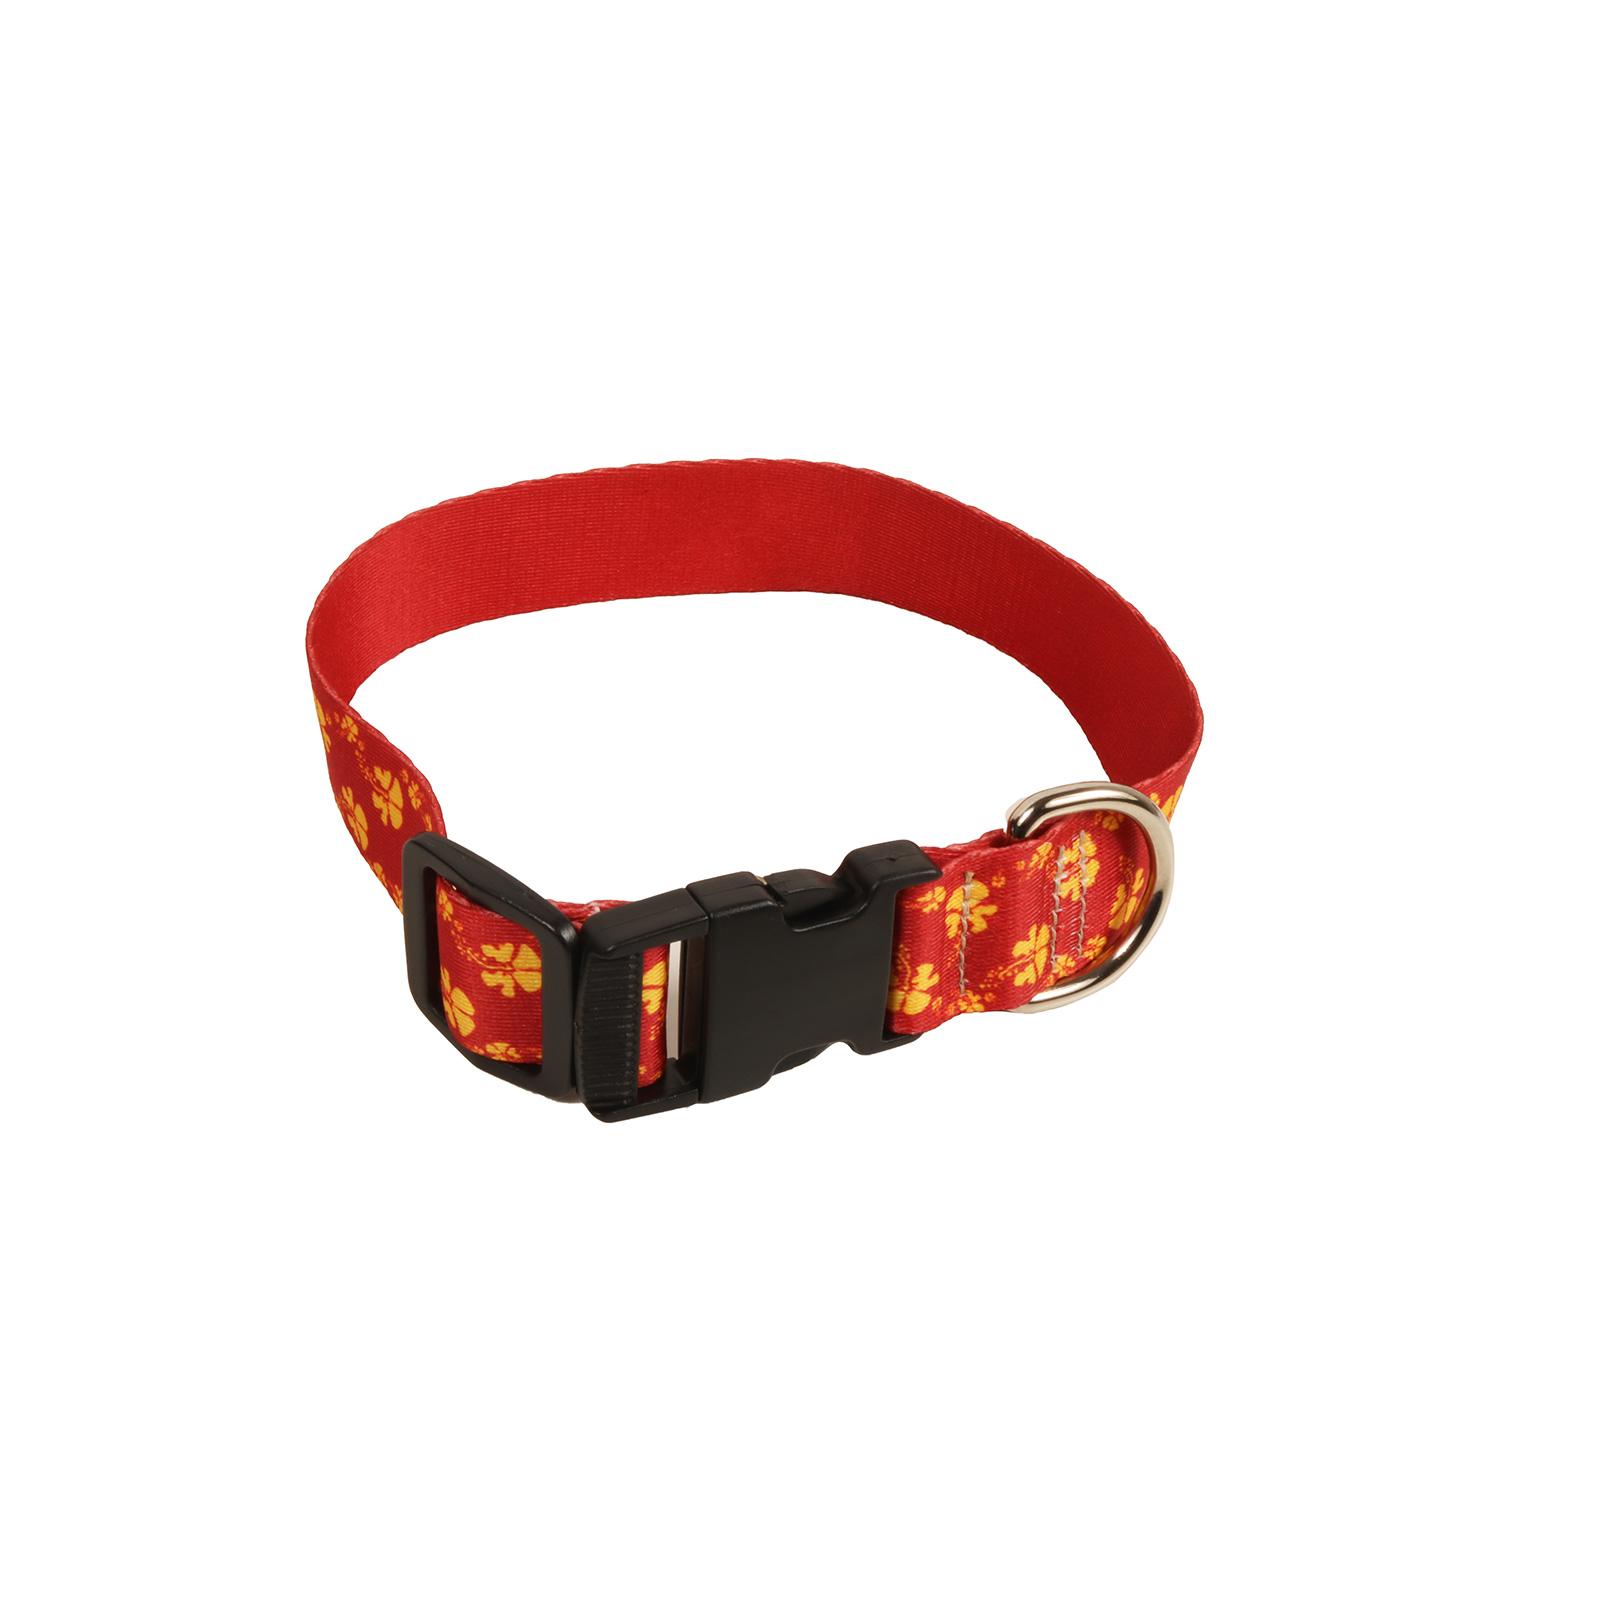 Ohana Dog Collar image01